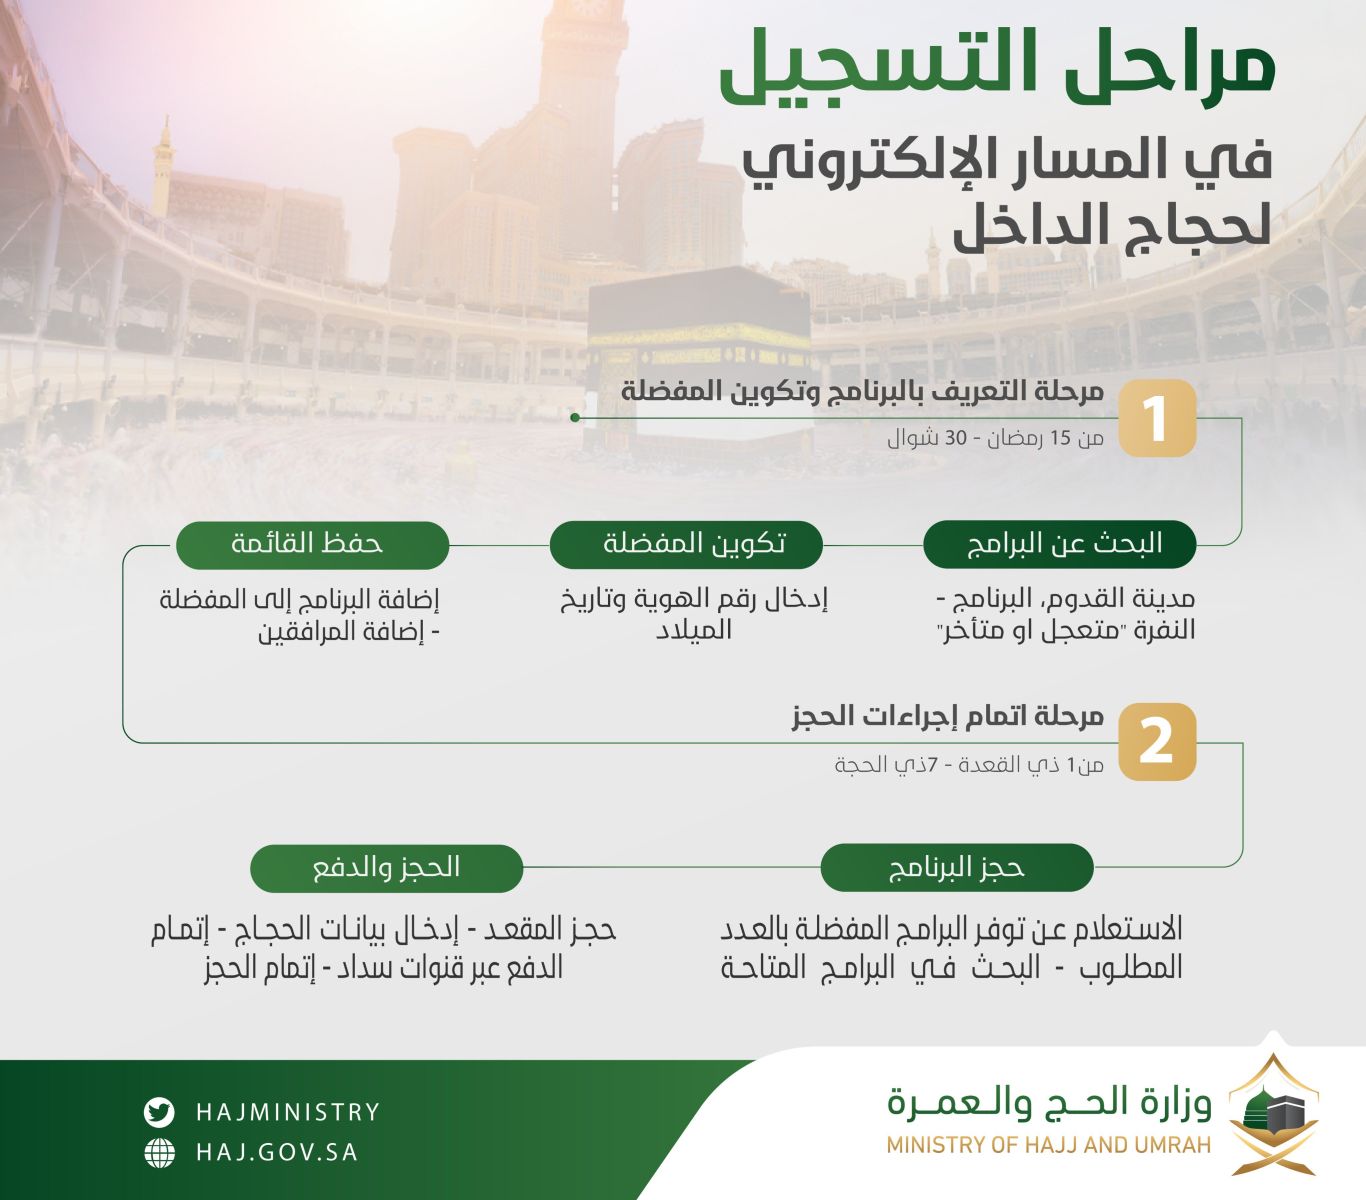 دخول السعودية بتأشيرة العمرة لأداء الحج 